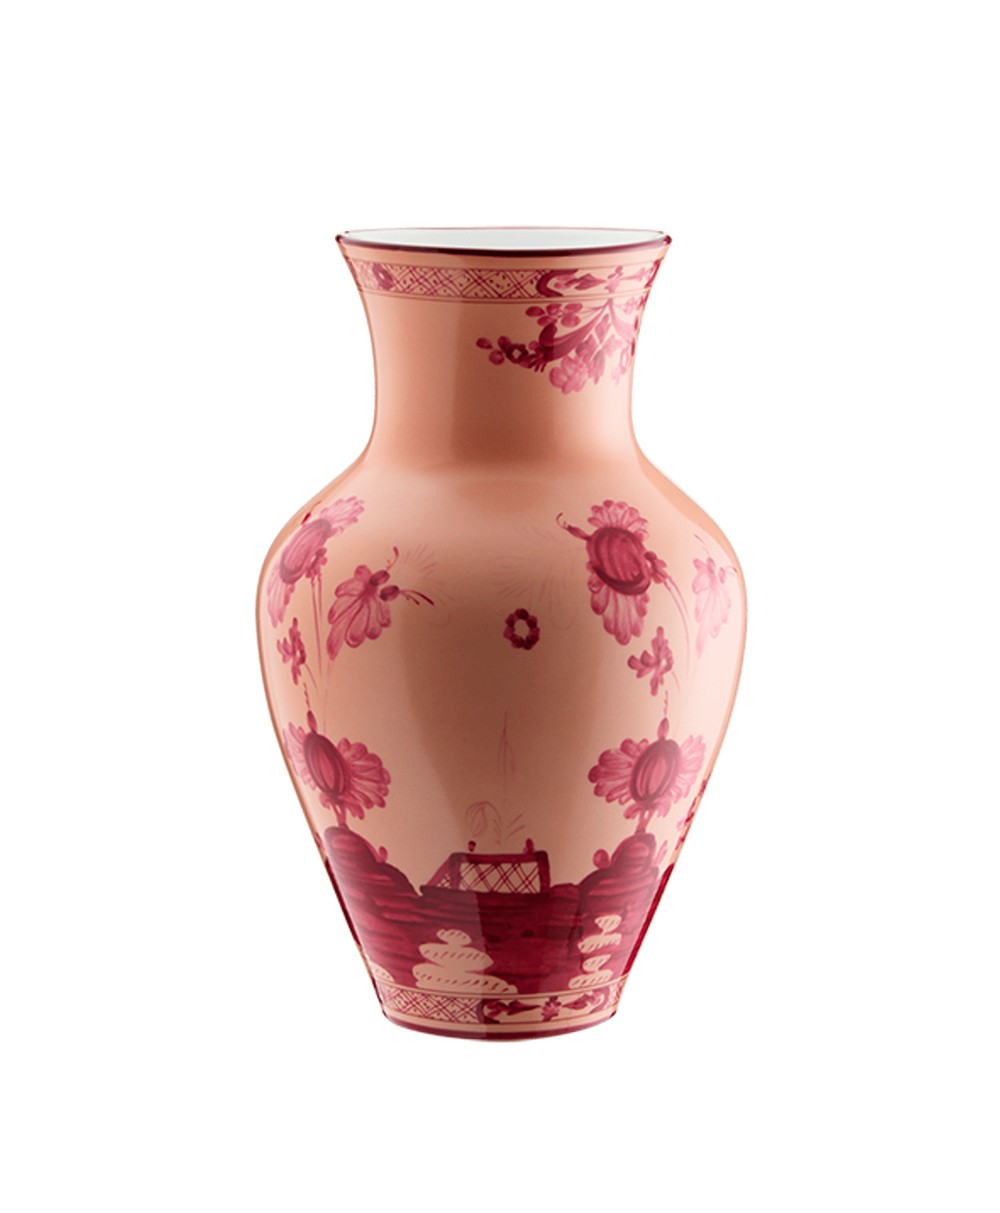 Hier sehen Sie: Oriente Italiano Ming Vase von Ginori 1735